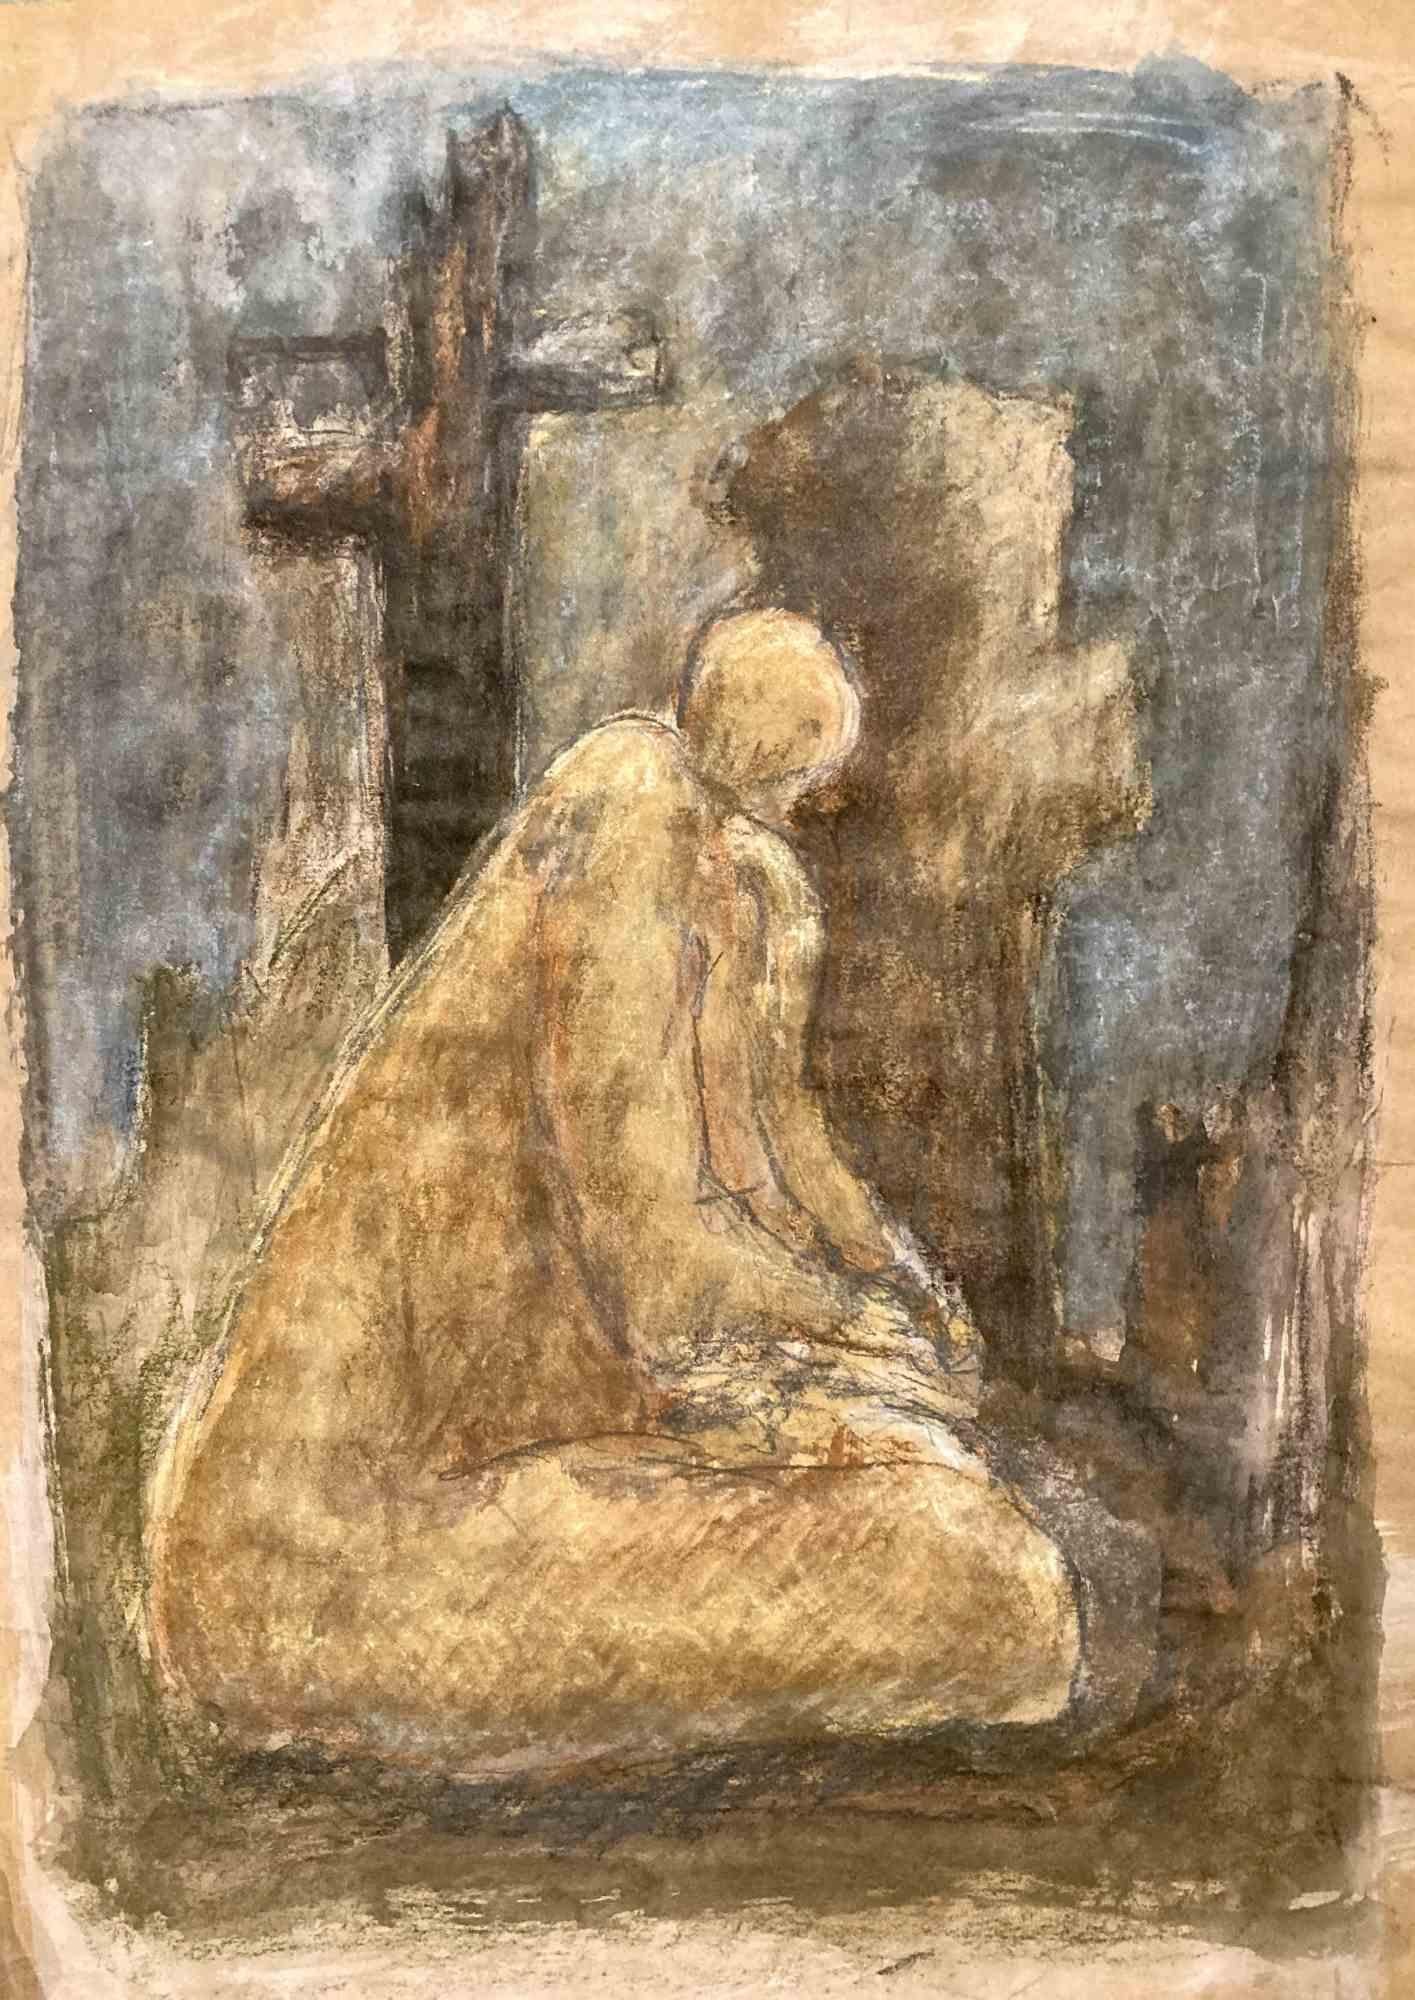 Prayer - Drawing by David Euler - 1985